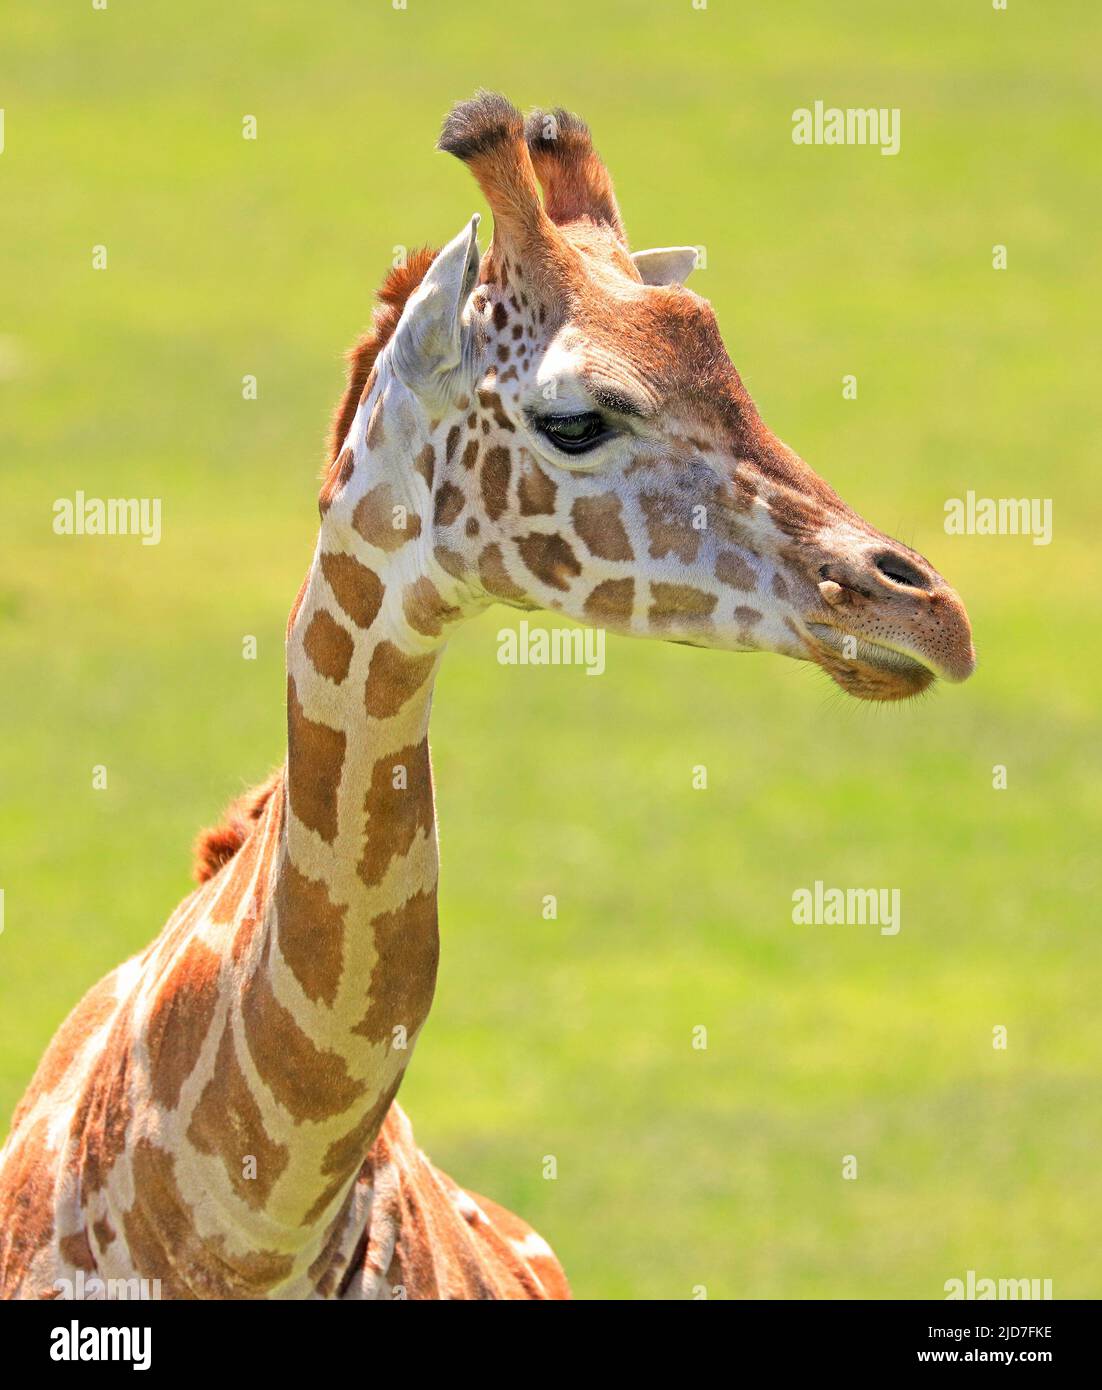 Cabeza y cuello Giraffe Retrato de primer plano Foto de stock